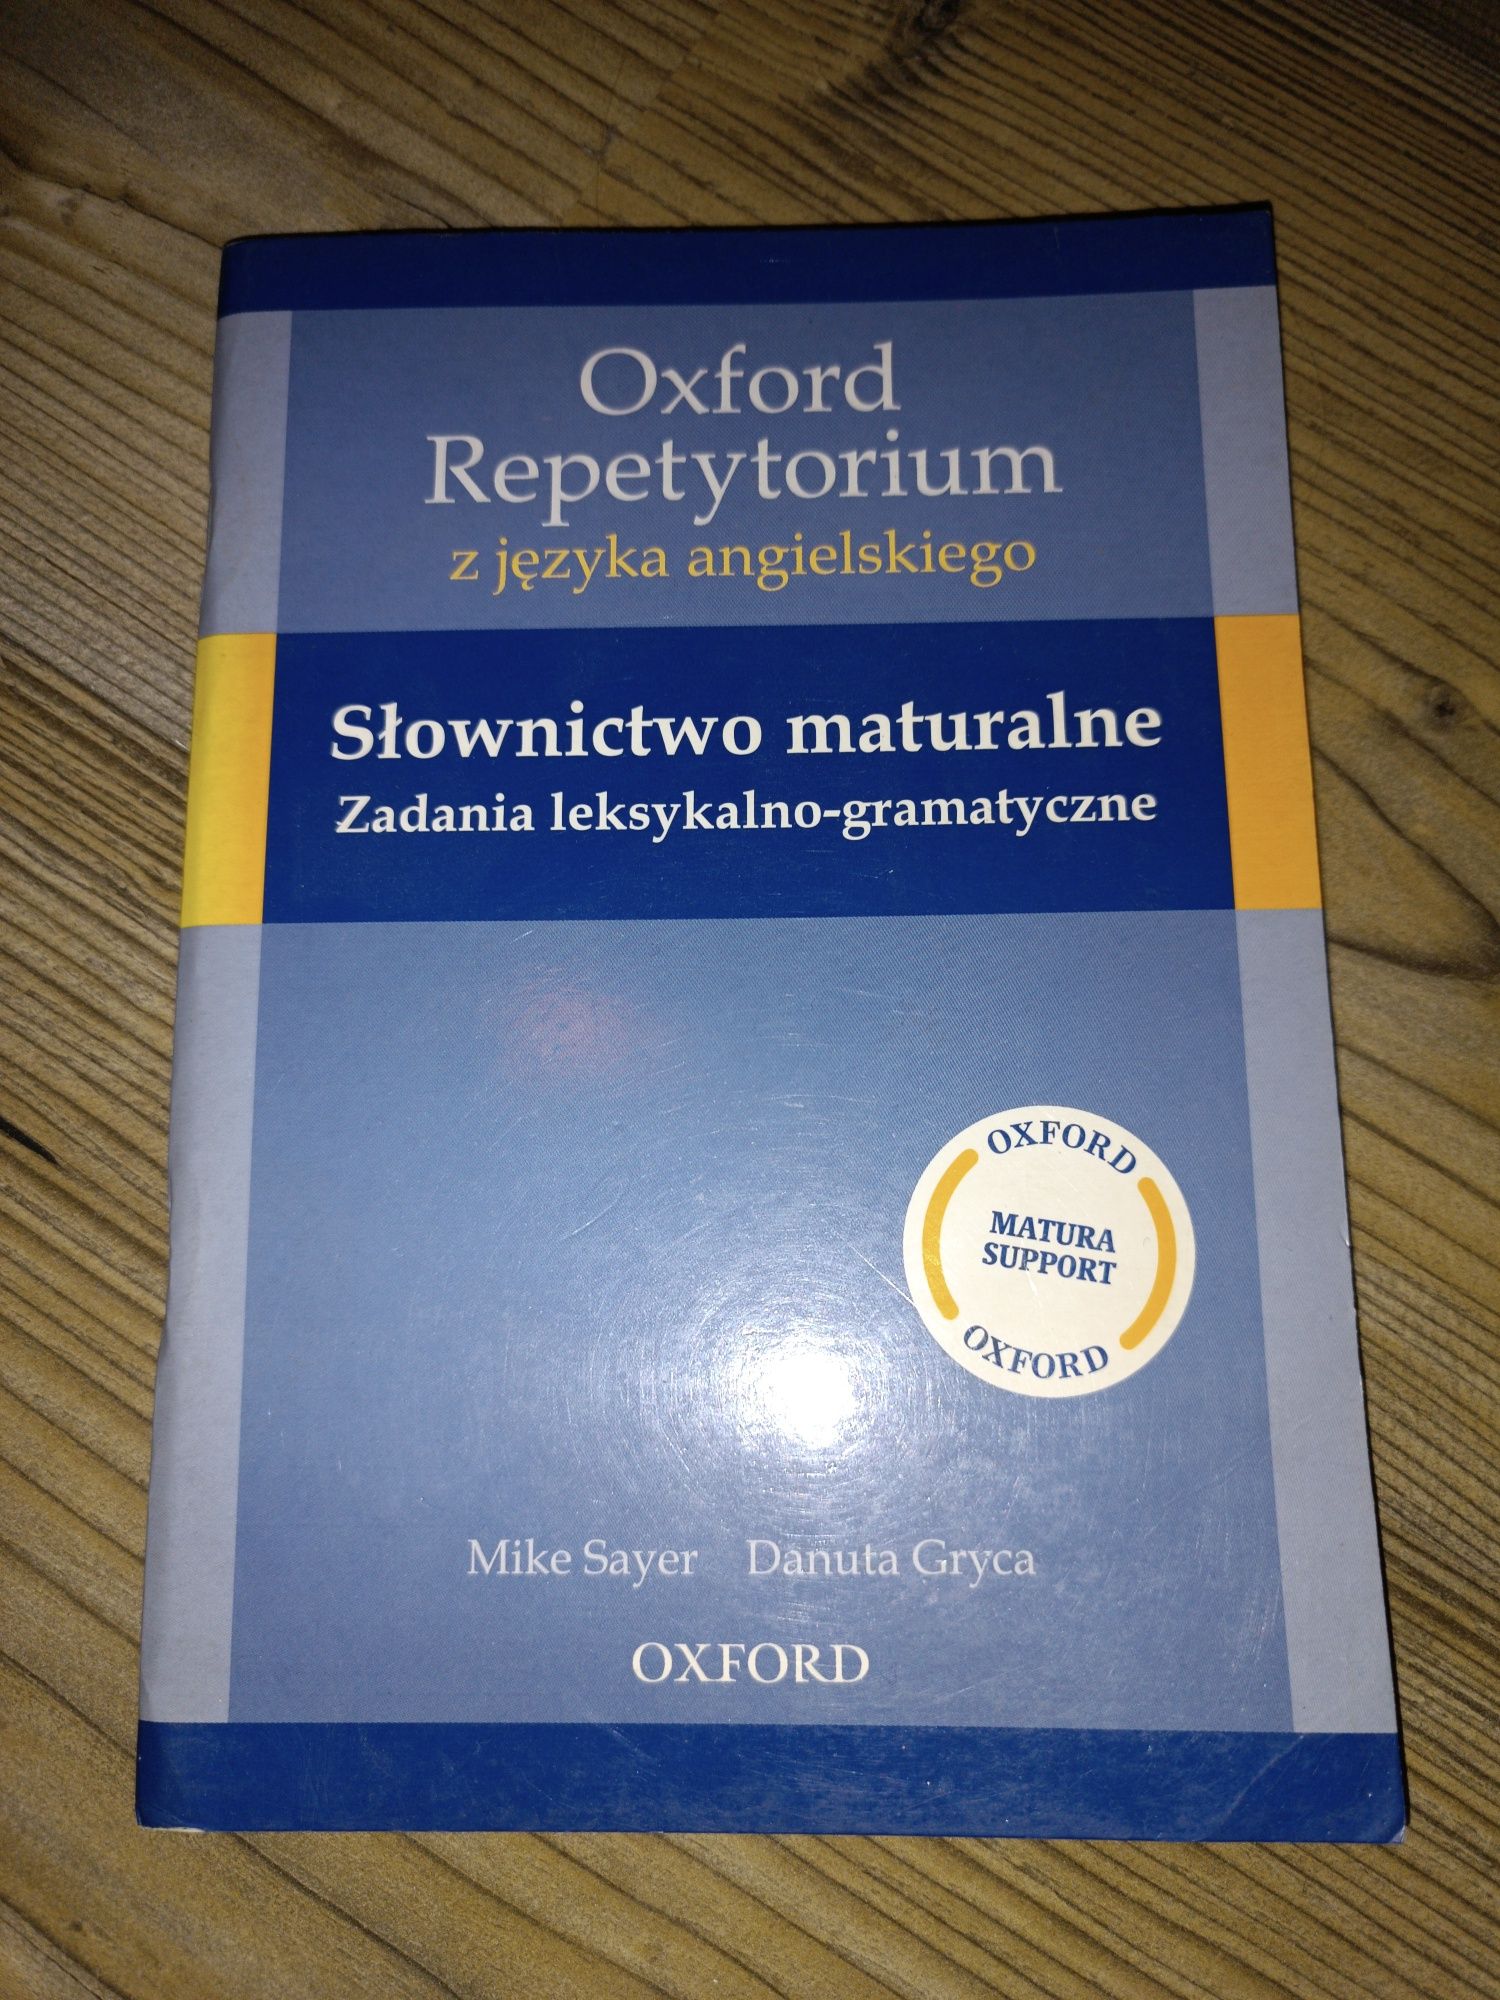 Oxford repetytorium z języka angielskiego słownictwo maturalne